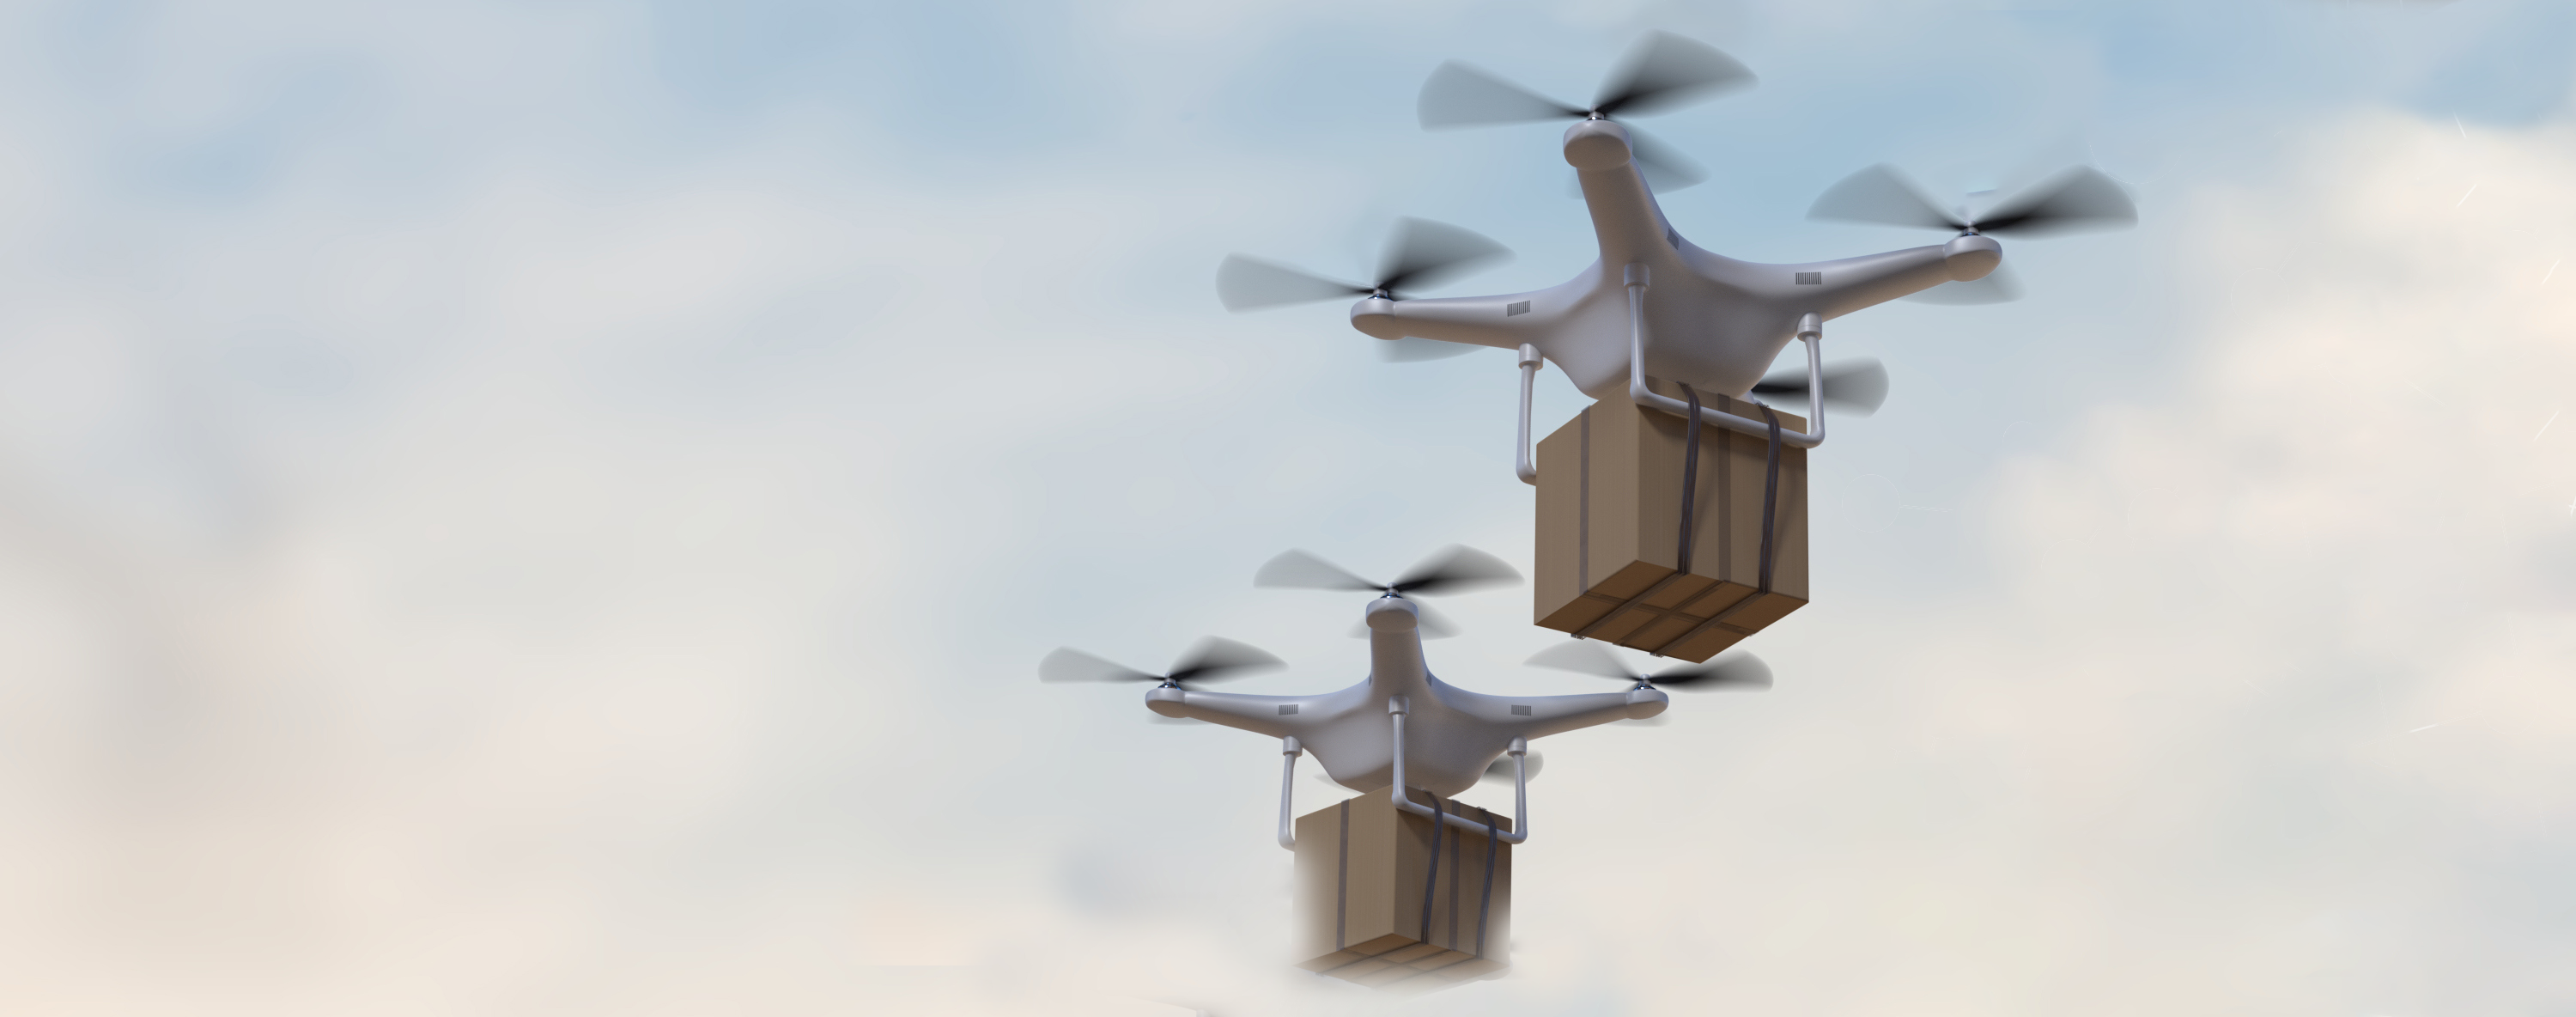 Ohjelmistorobotiikkaa hyödyntävät dronet kuljettavat paketteja